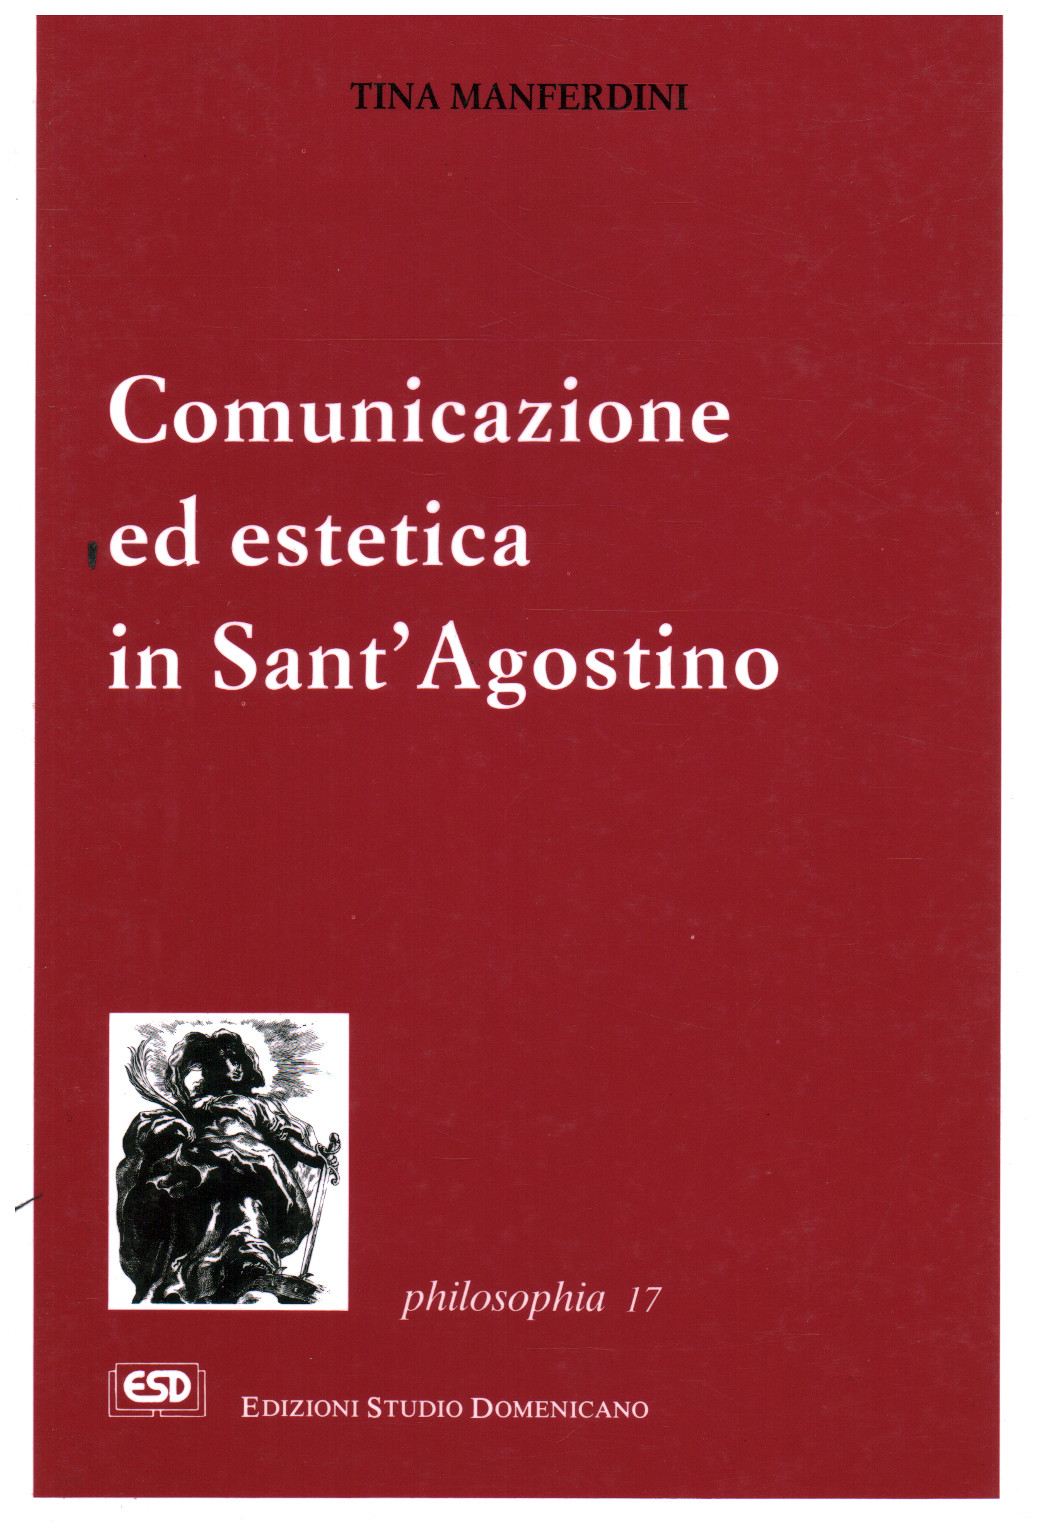 Comunicazione ed estetica in Sant Agostino, s.a.